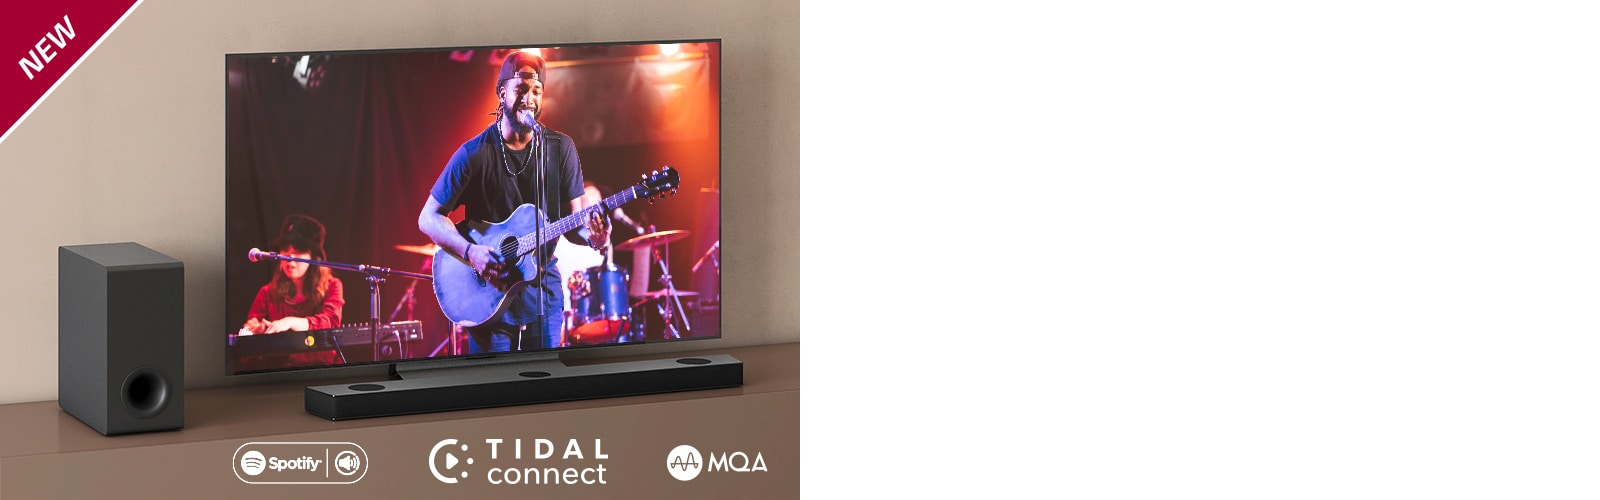 En LG TV står på en brun hylla, LG Soundbar S90QY är placerad framför TV:n. En subwoofer står på vänster sida om TV:n. TV:n visar en konsertscen. NEW-märket visas i övre vänstra hörnet.